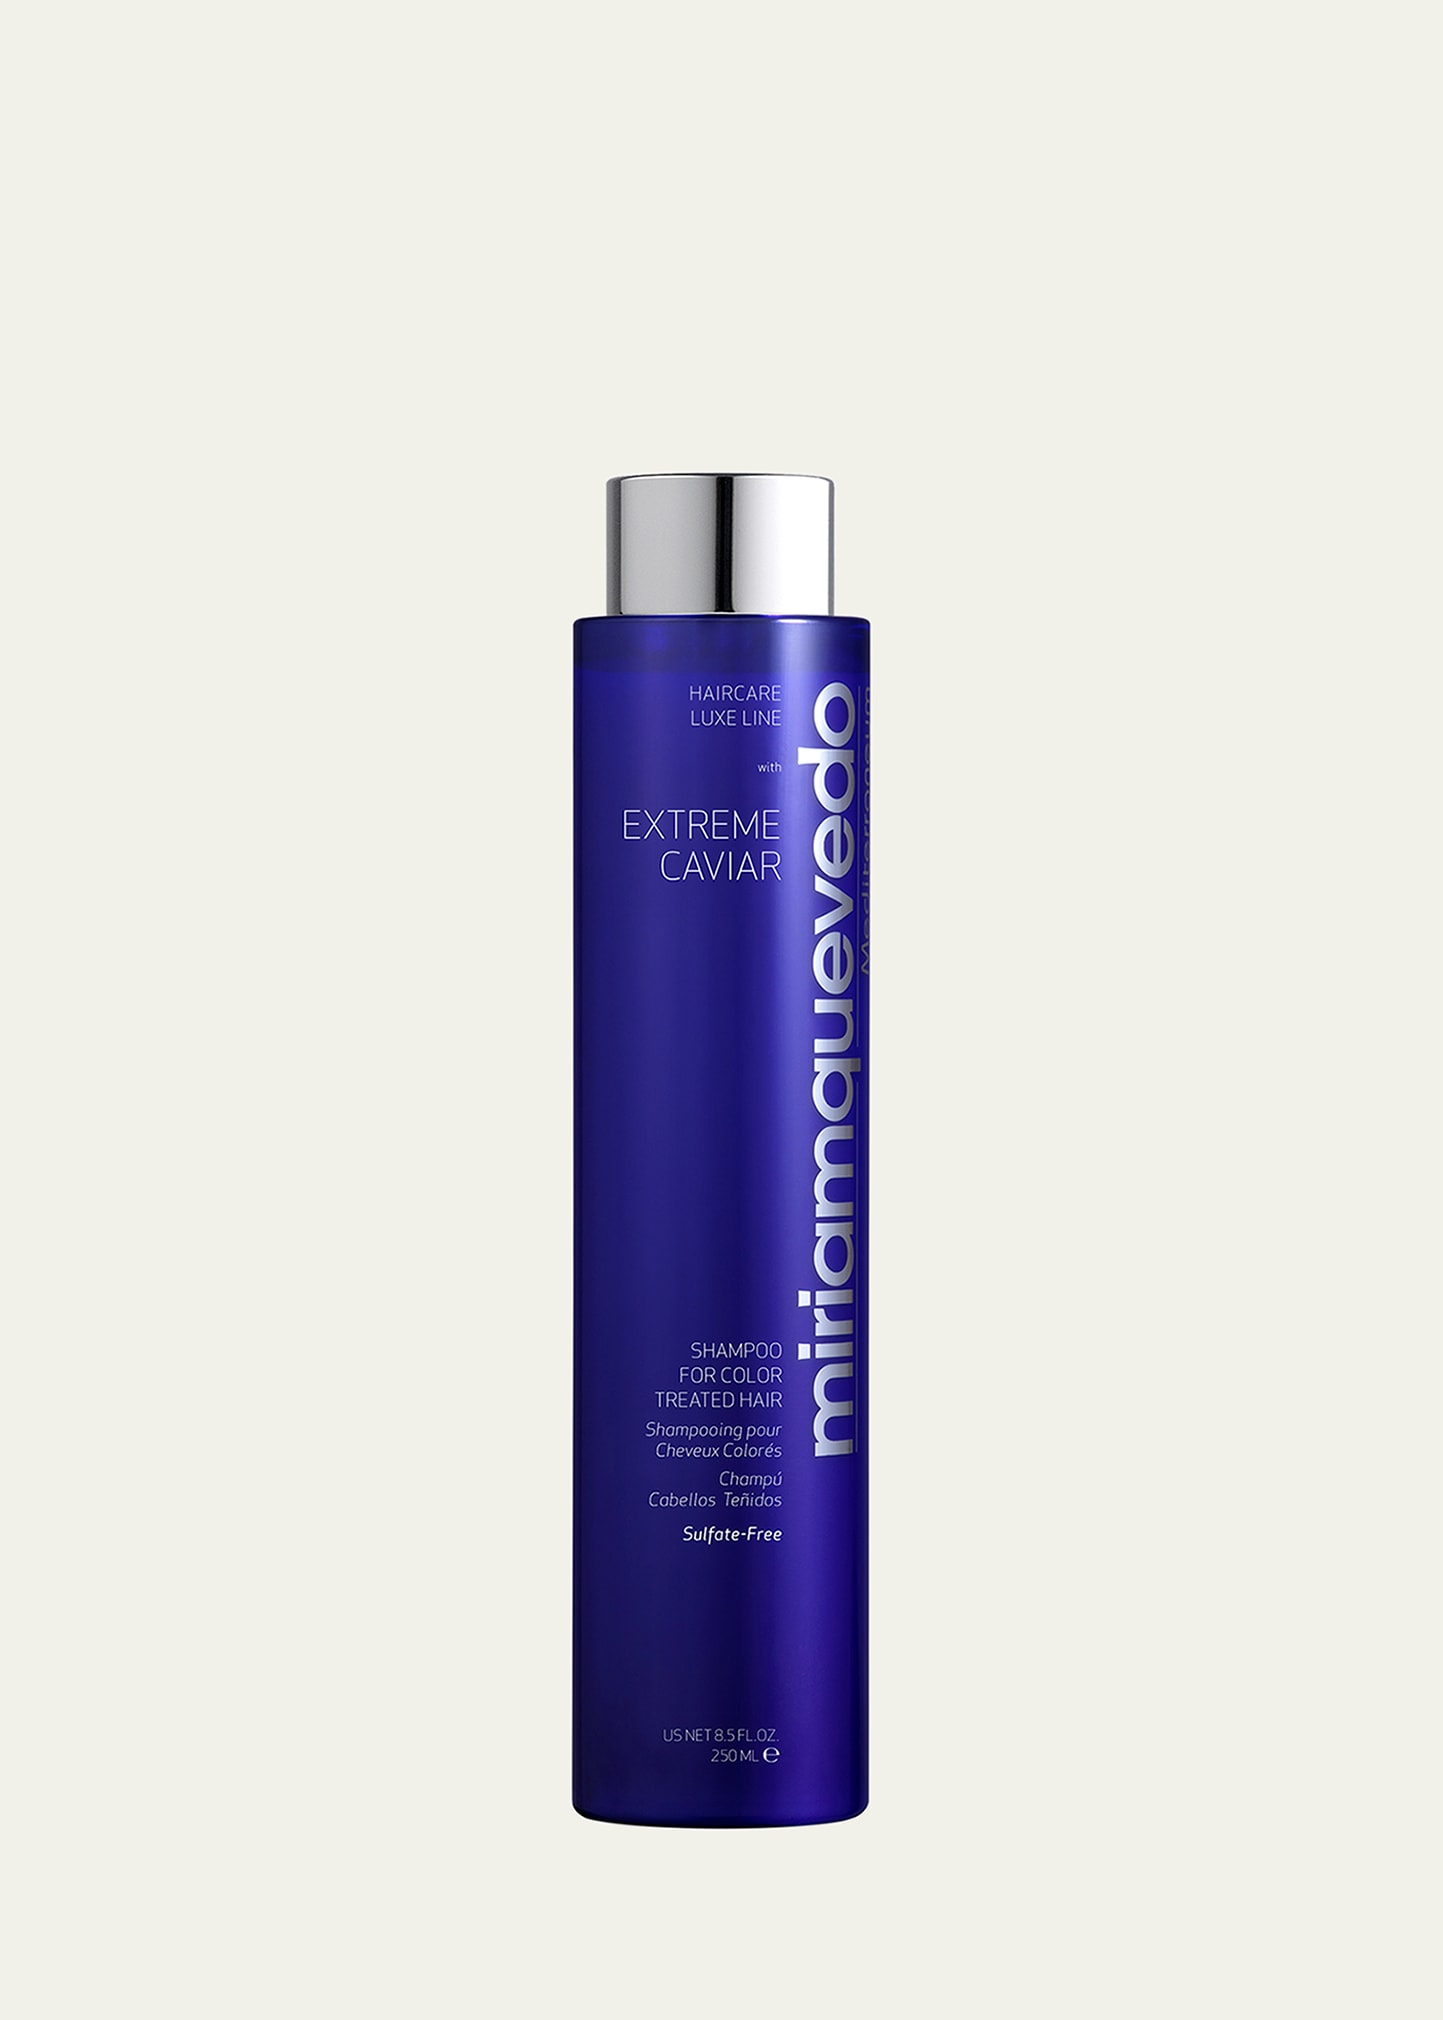 Extreme Caviar Shampoo for Color Treated Hair, 8.5 oz./250mL